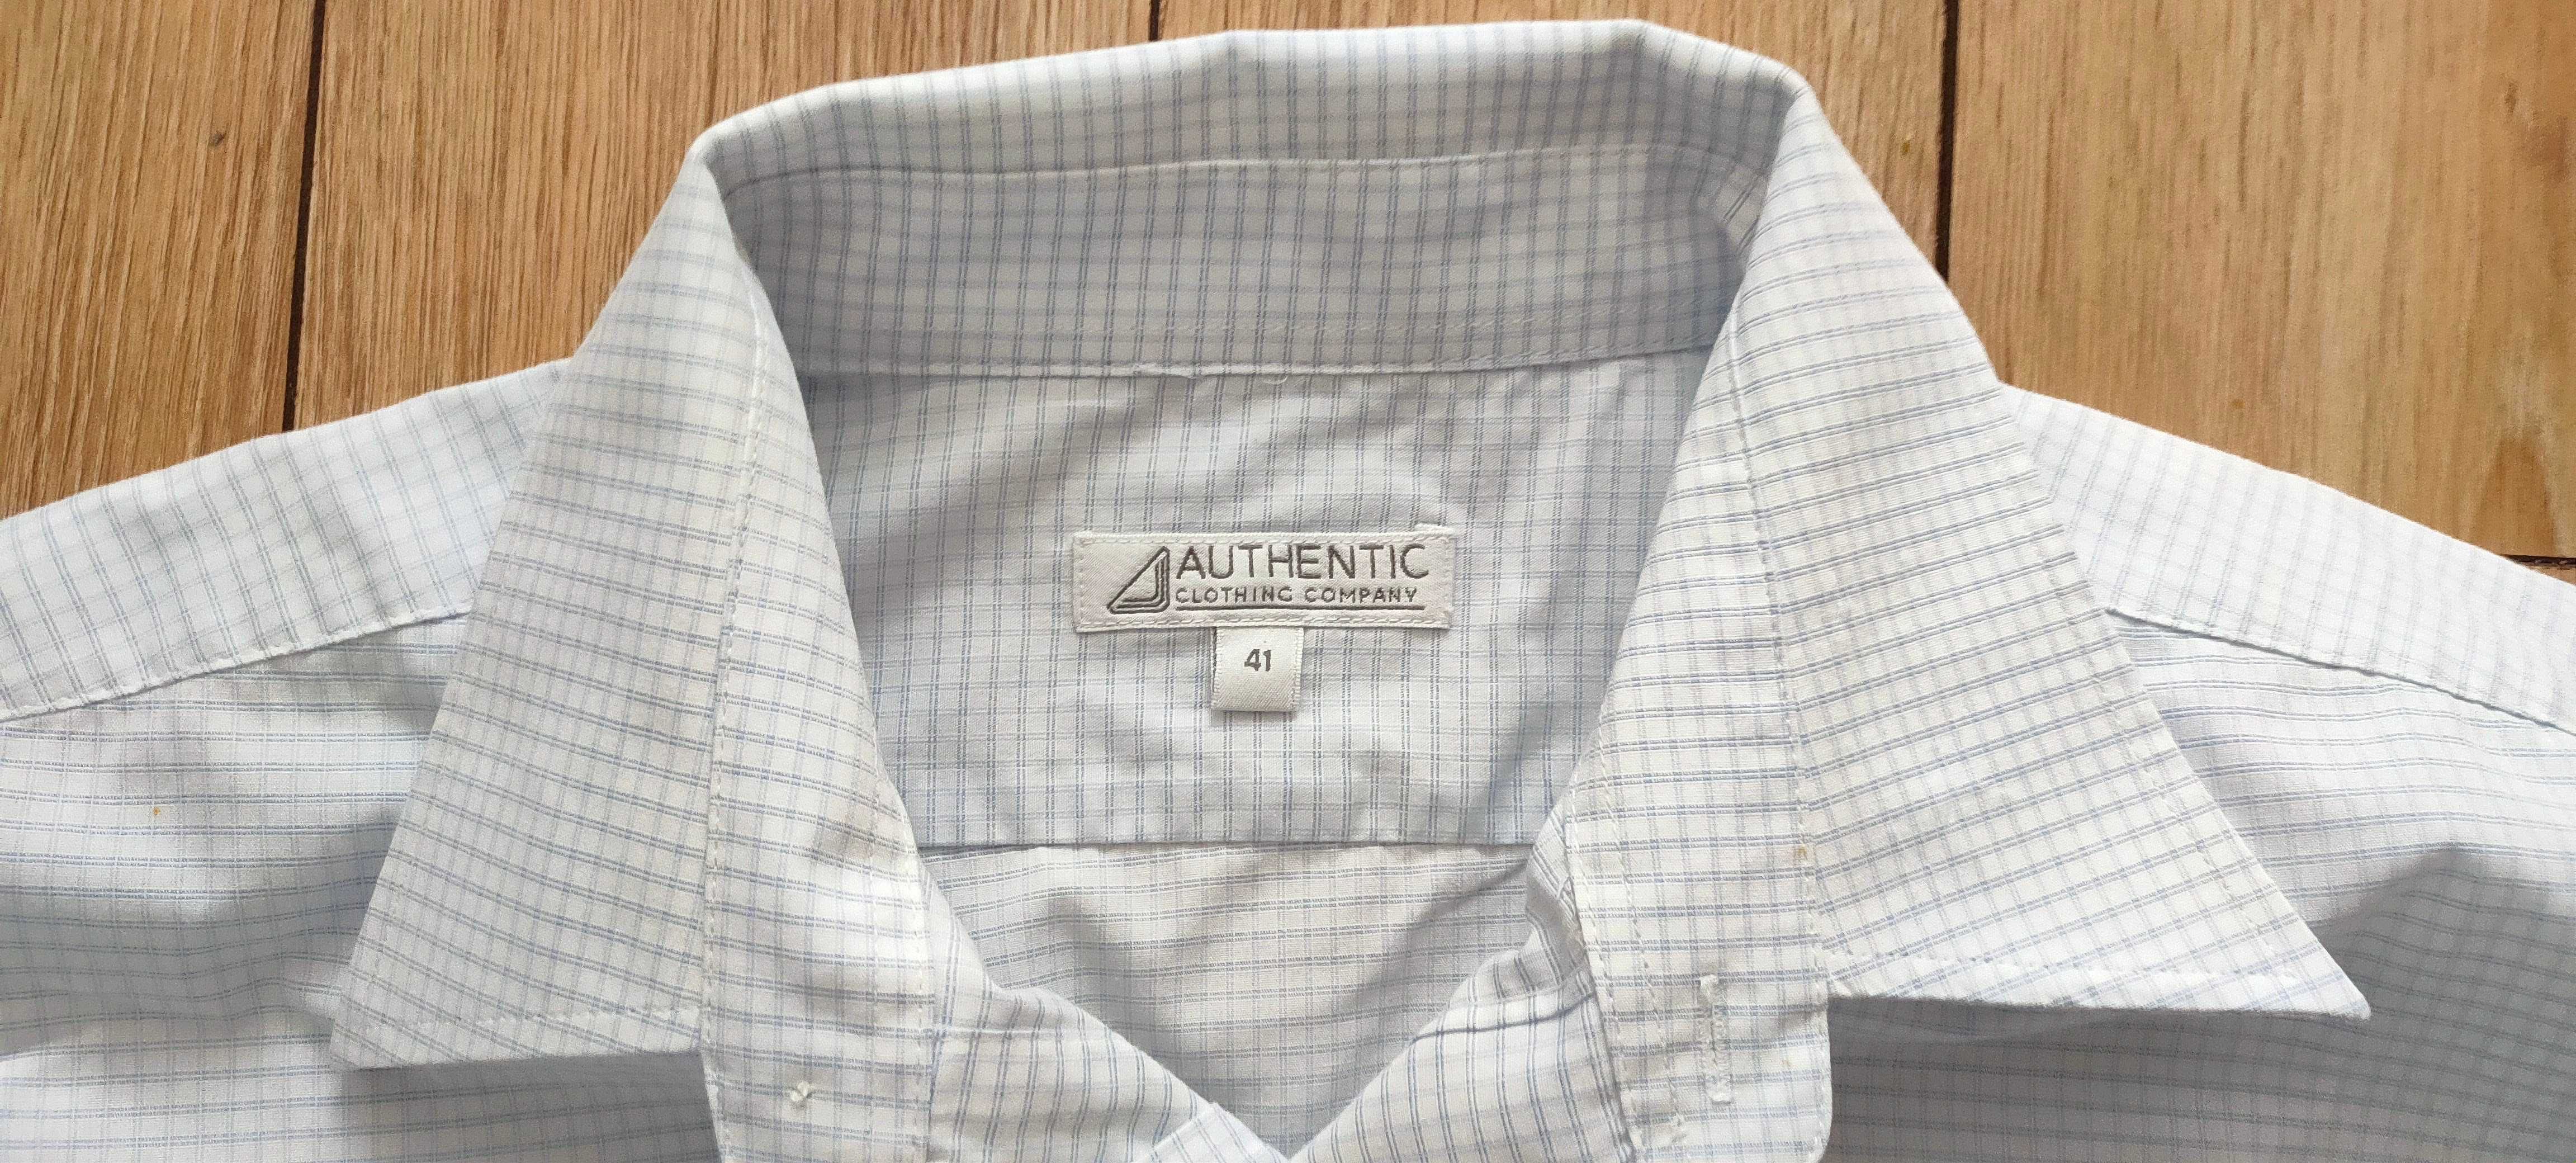 Koszula biała w błękitną kratkę, Authentic, r. 41 (L/XL)